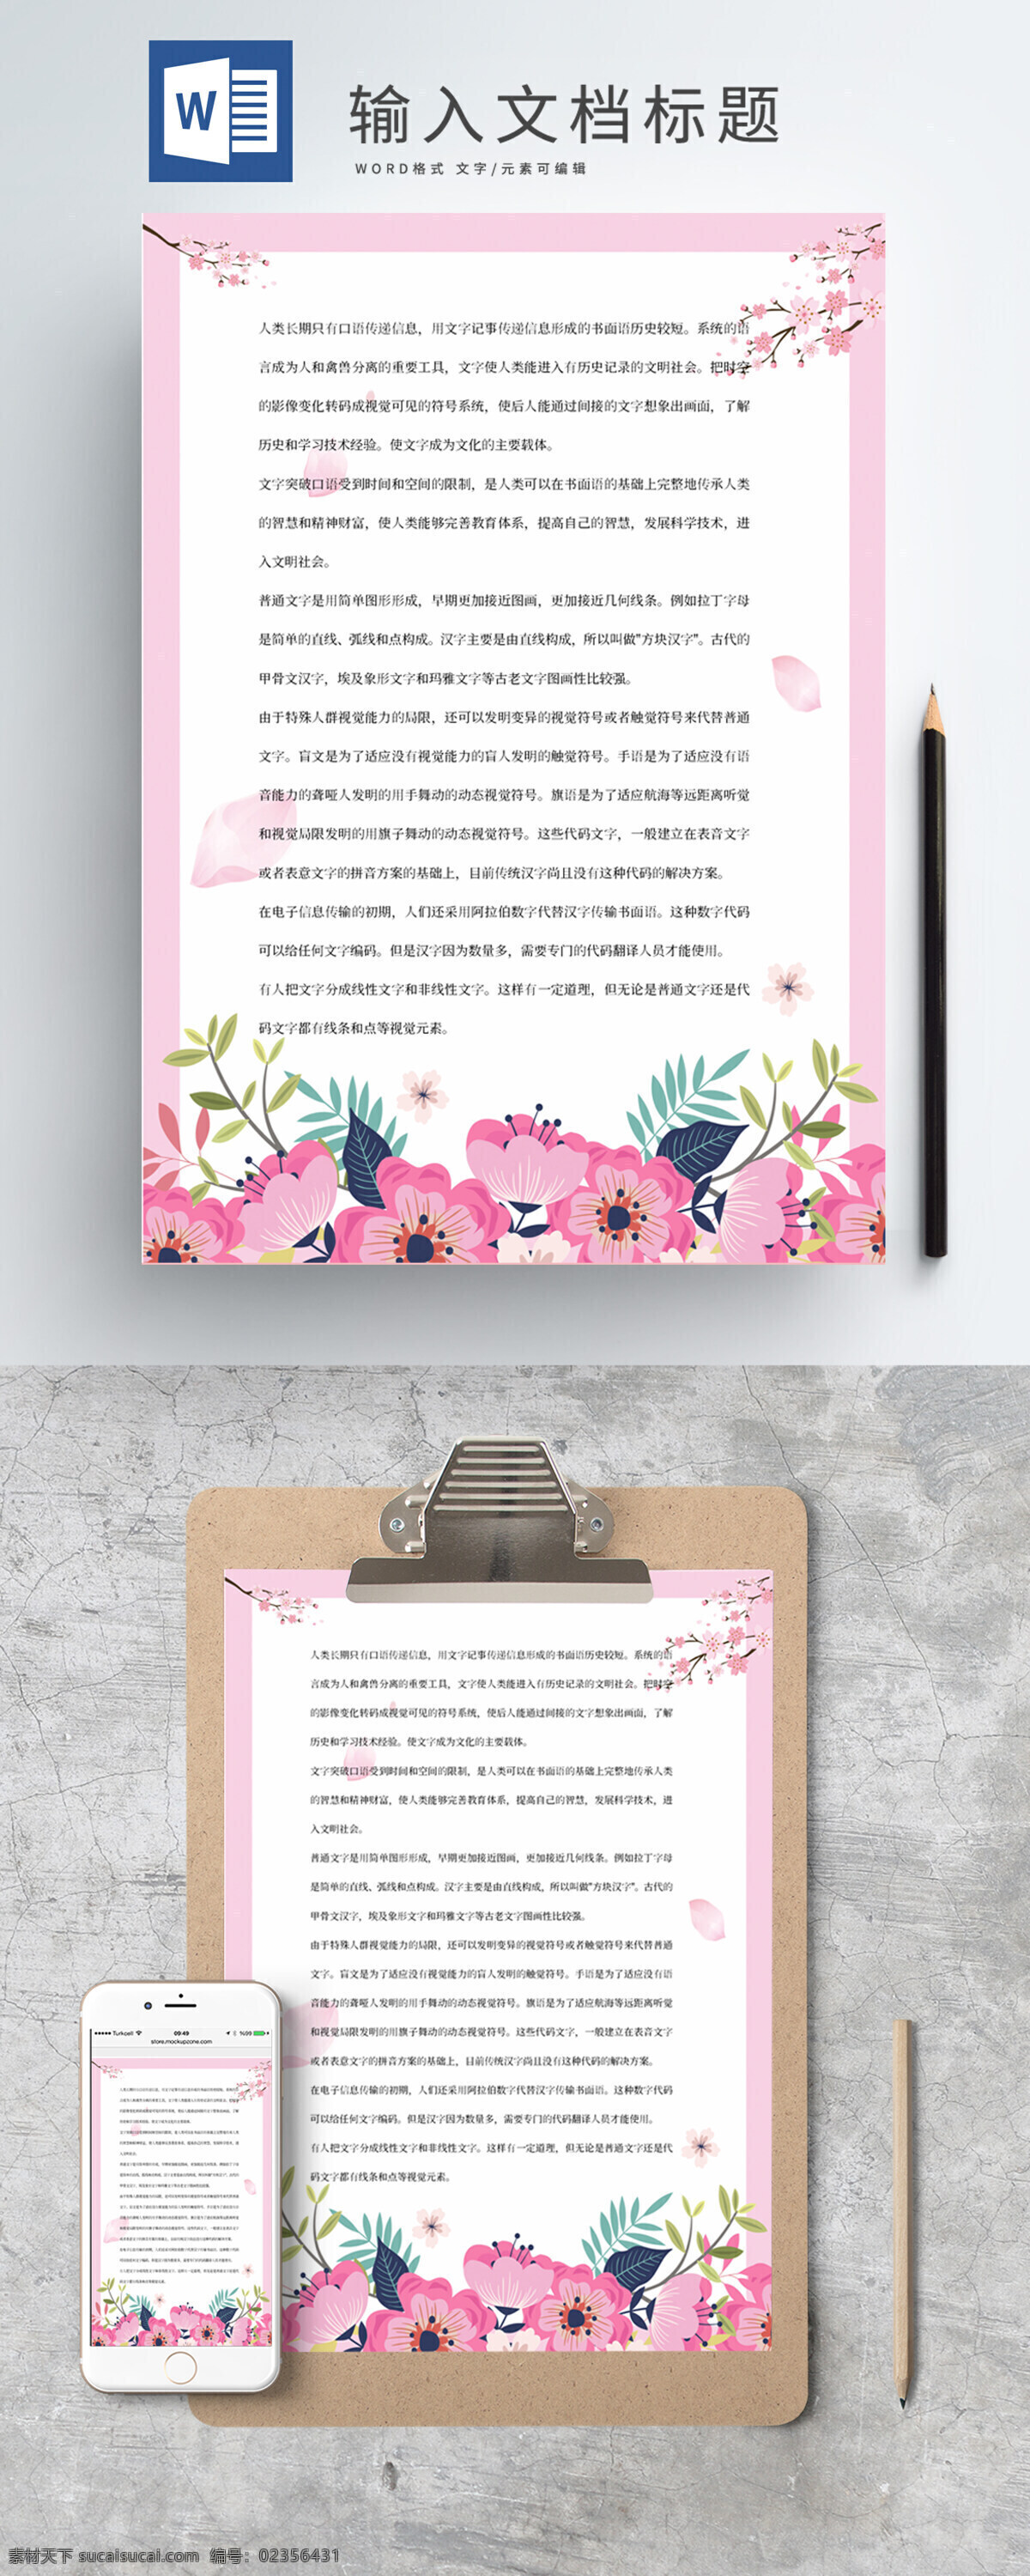 粉色 花朵 边框 浪漫 情人节 信纸 粉色花朵边框 粉色花朵 花朵信纸 浪漫情人节 情人节信纸